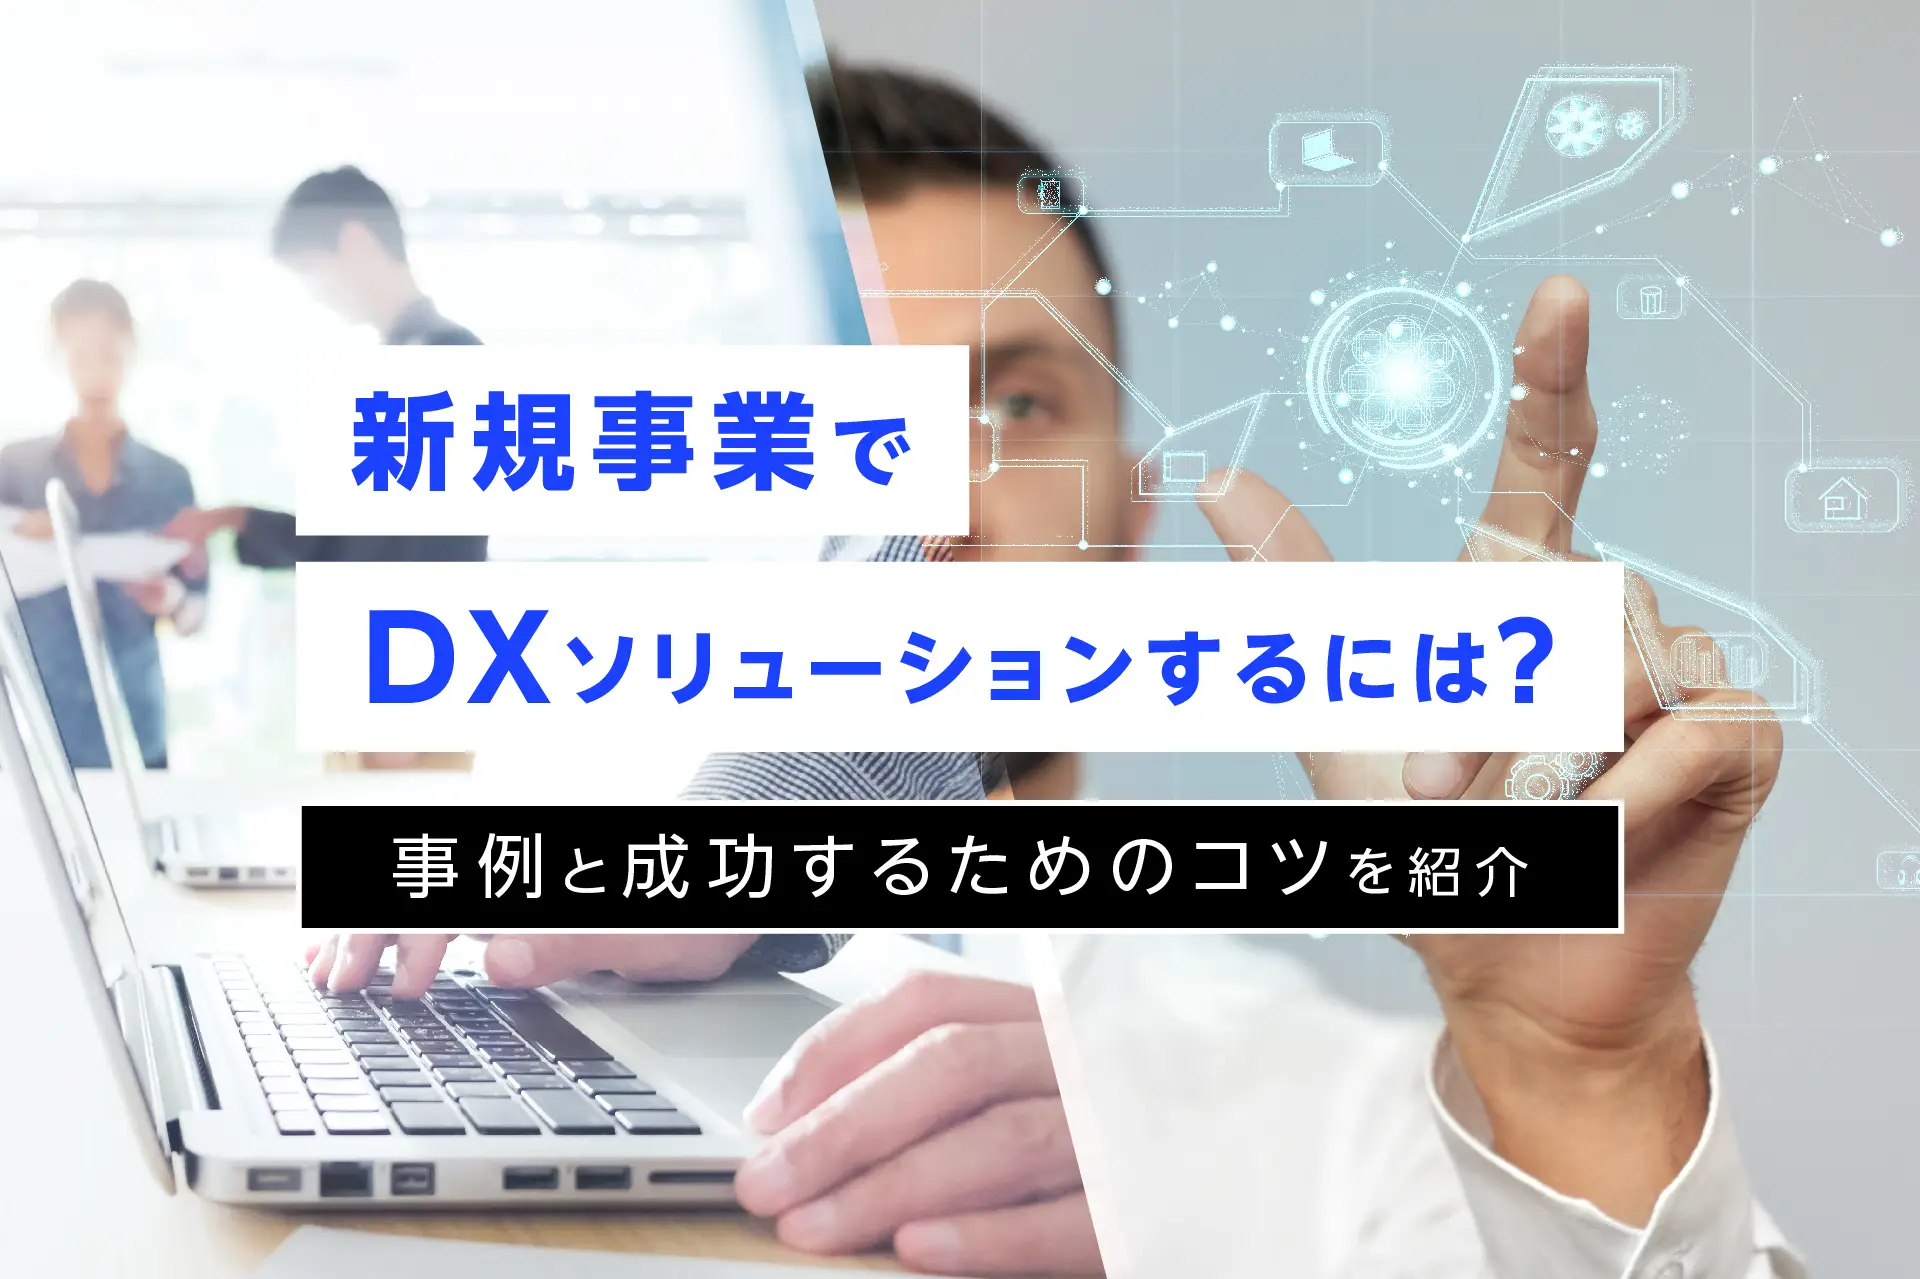 新規事業でDXソリューションするには？事例と成功するためのコツを紹介